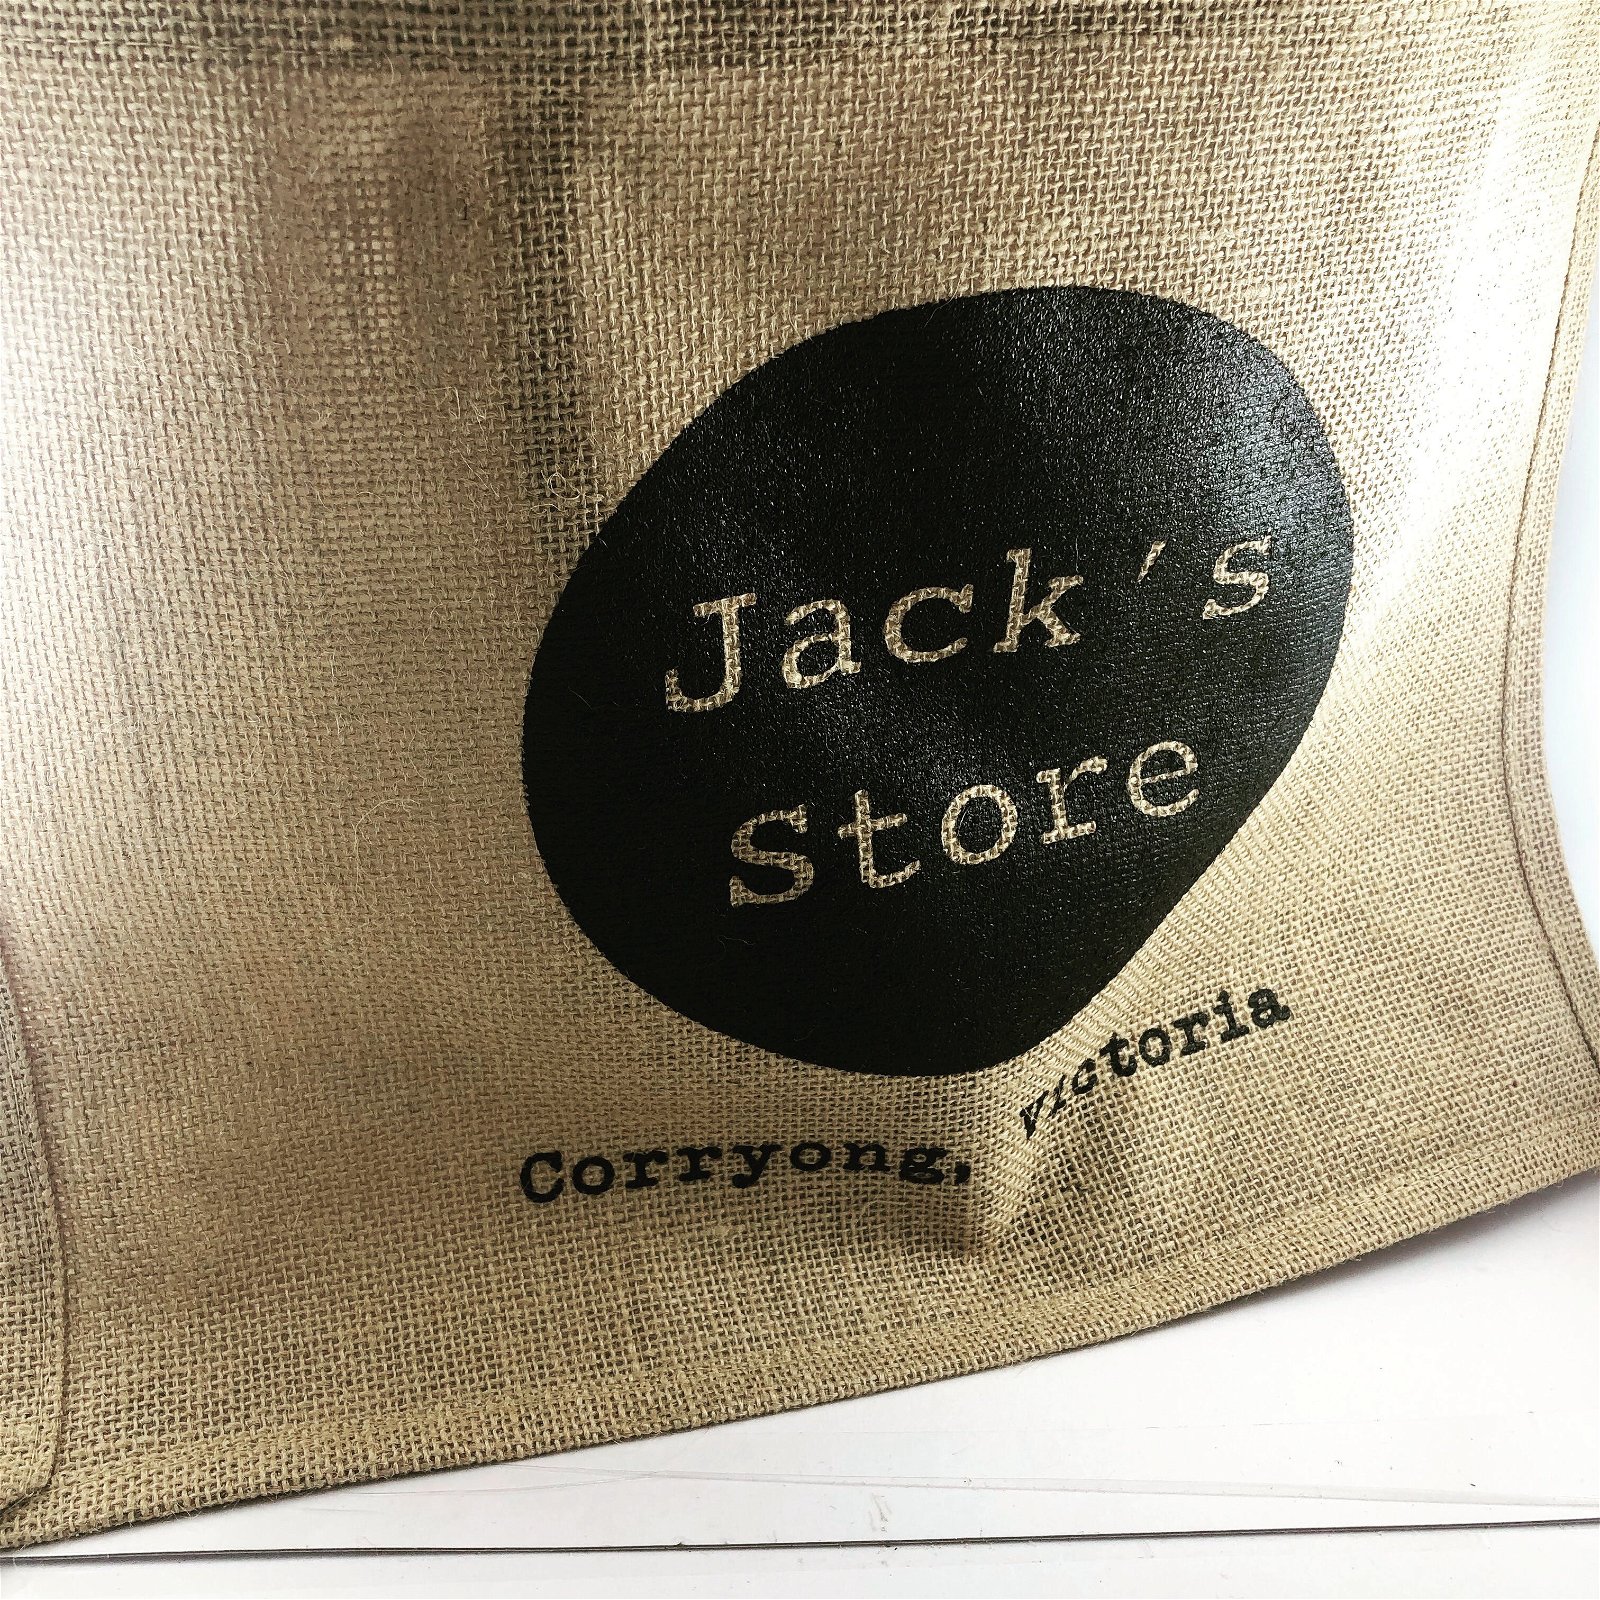 Jack's Store - Pubs Sydney